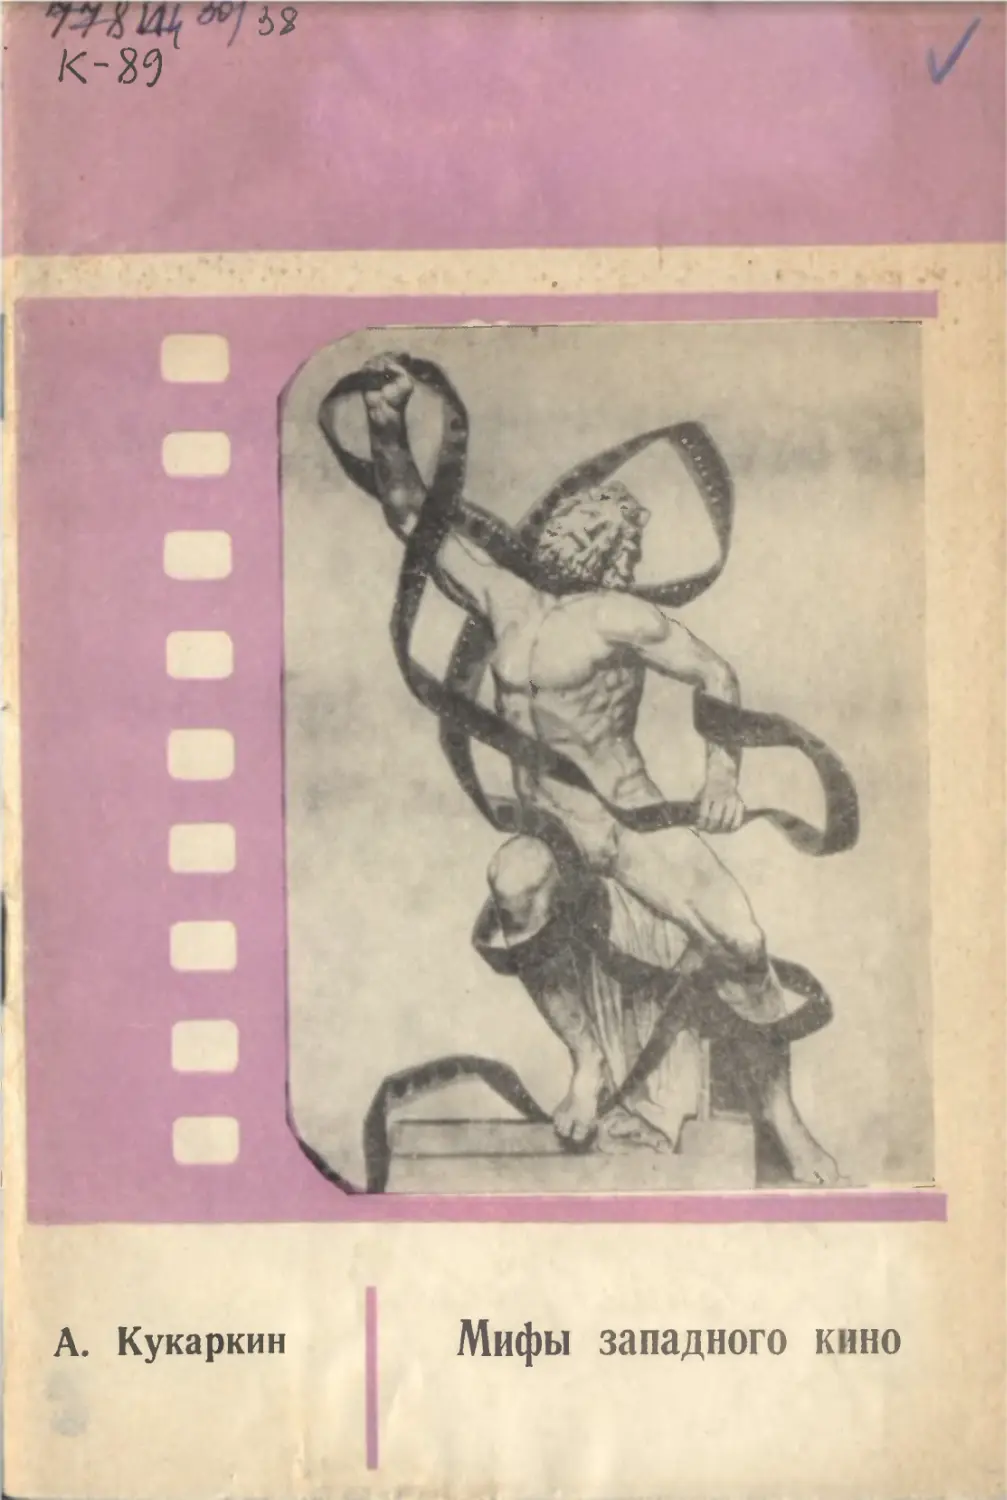 А. Кукаркин. Мифы западного кино. Издательство «Знание». Москва, 1968